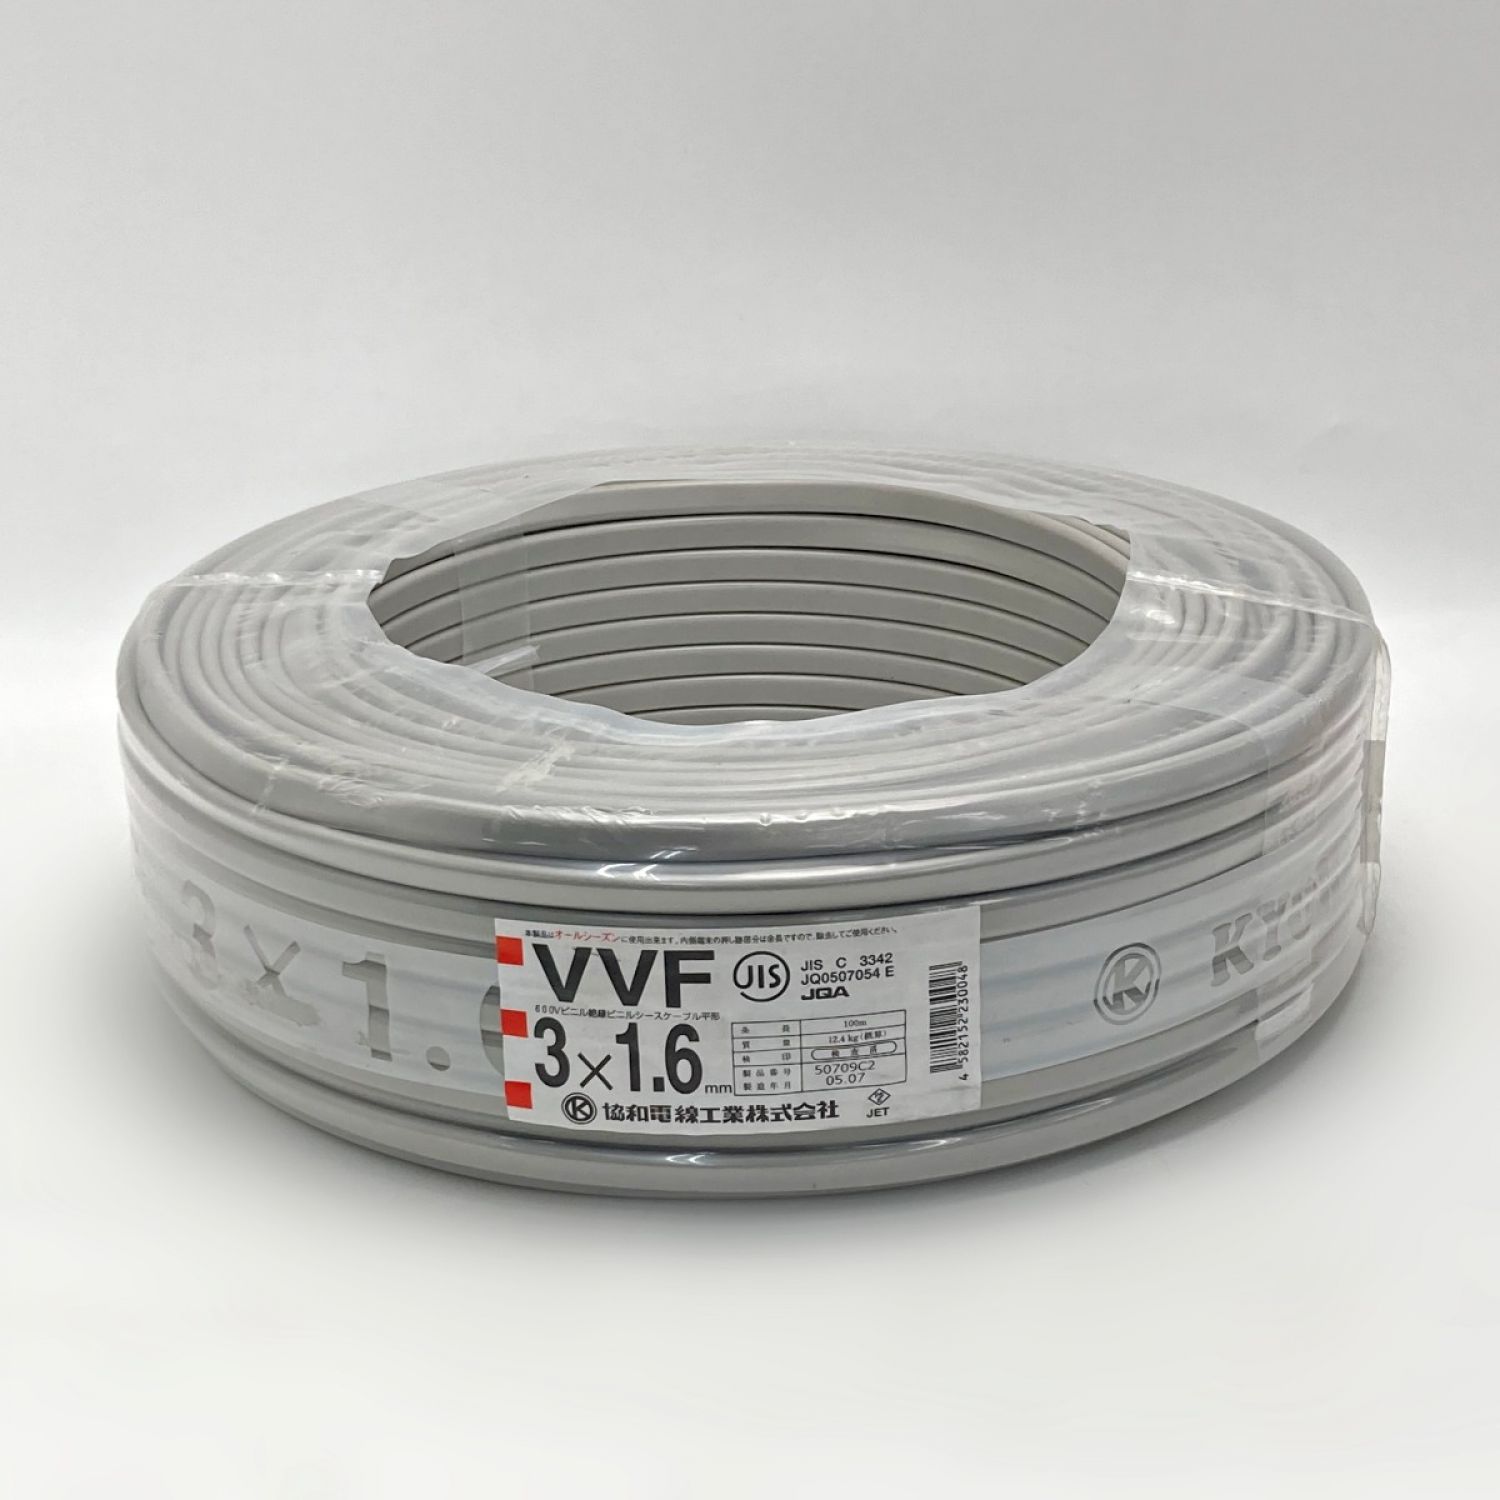 VVF ケーブル   協和電線 VVF3×1.6  （赤.白.黒） 1巻